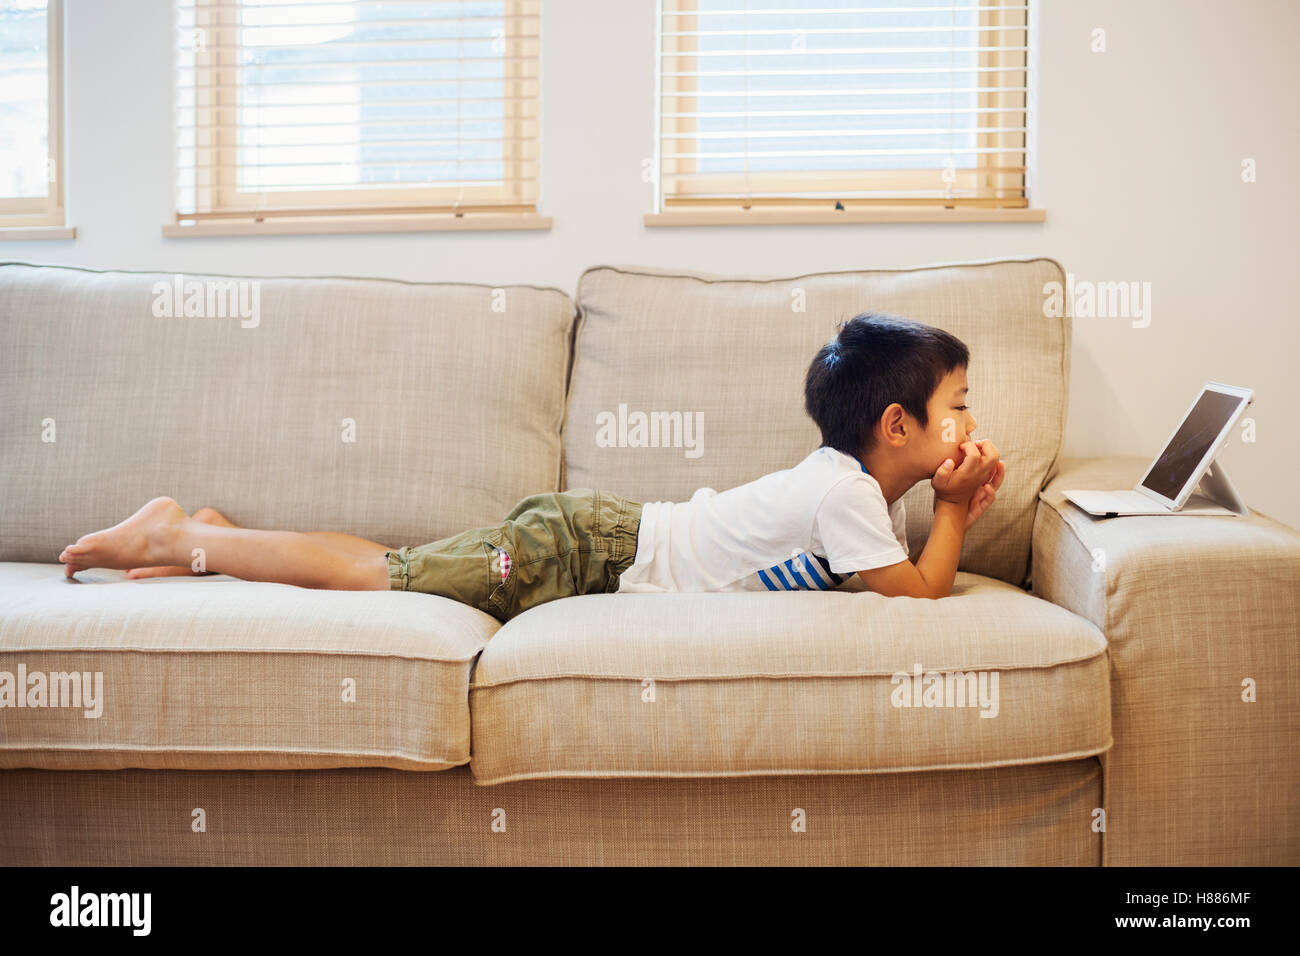 Haus der Familie. Ein Junge auf einem Sofa beobachten eine digitale-Tablette. Stockfoto